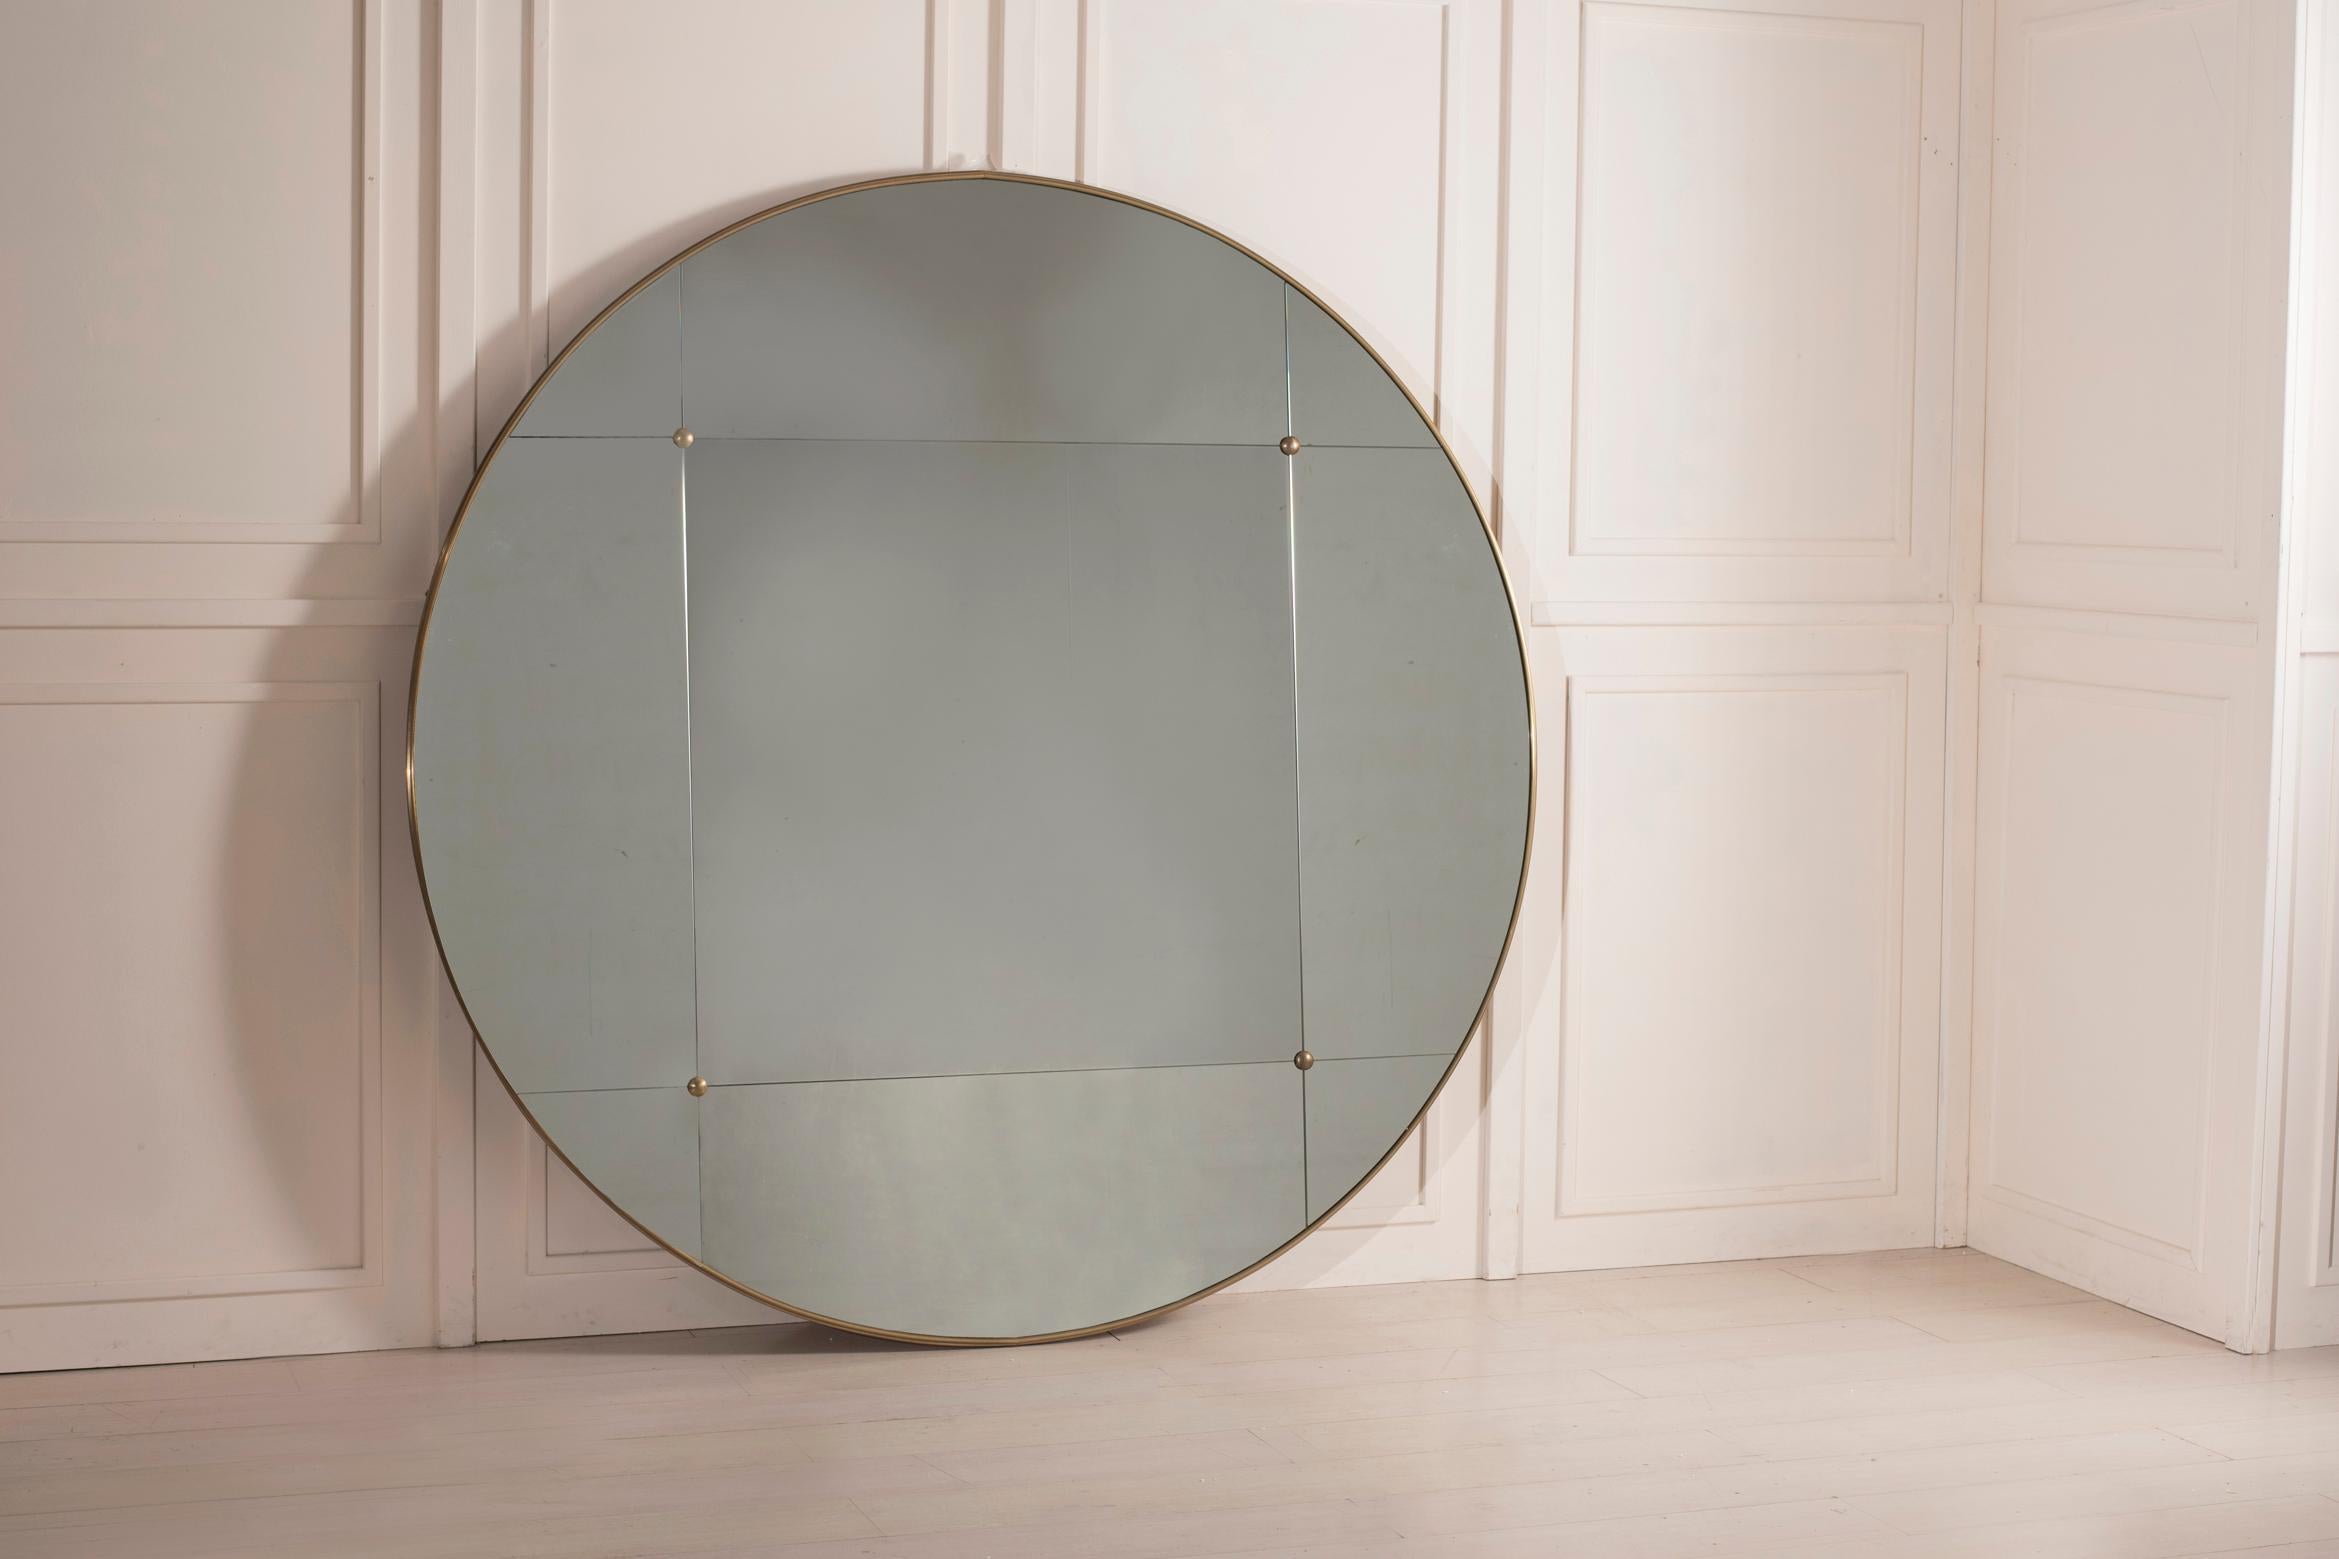 Pescetta präsentiert seine Kollektion von zeitgenössischen, individuell gestaltbaren Spiegeln. Mit ihrem Messingrahmen, der Fensterscheibenoptik und den Messingnieten sind diese Spiegel der Idee des frühen 20. Jahrhunderts im Art-Déco-Stil